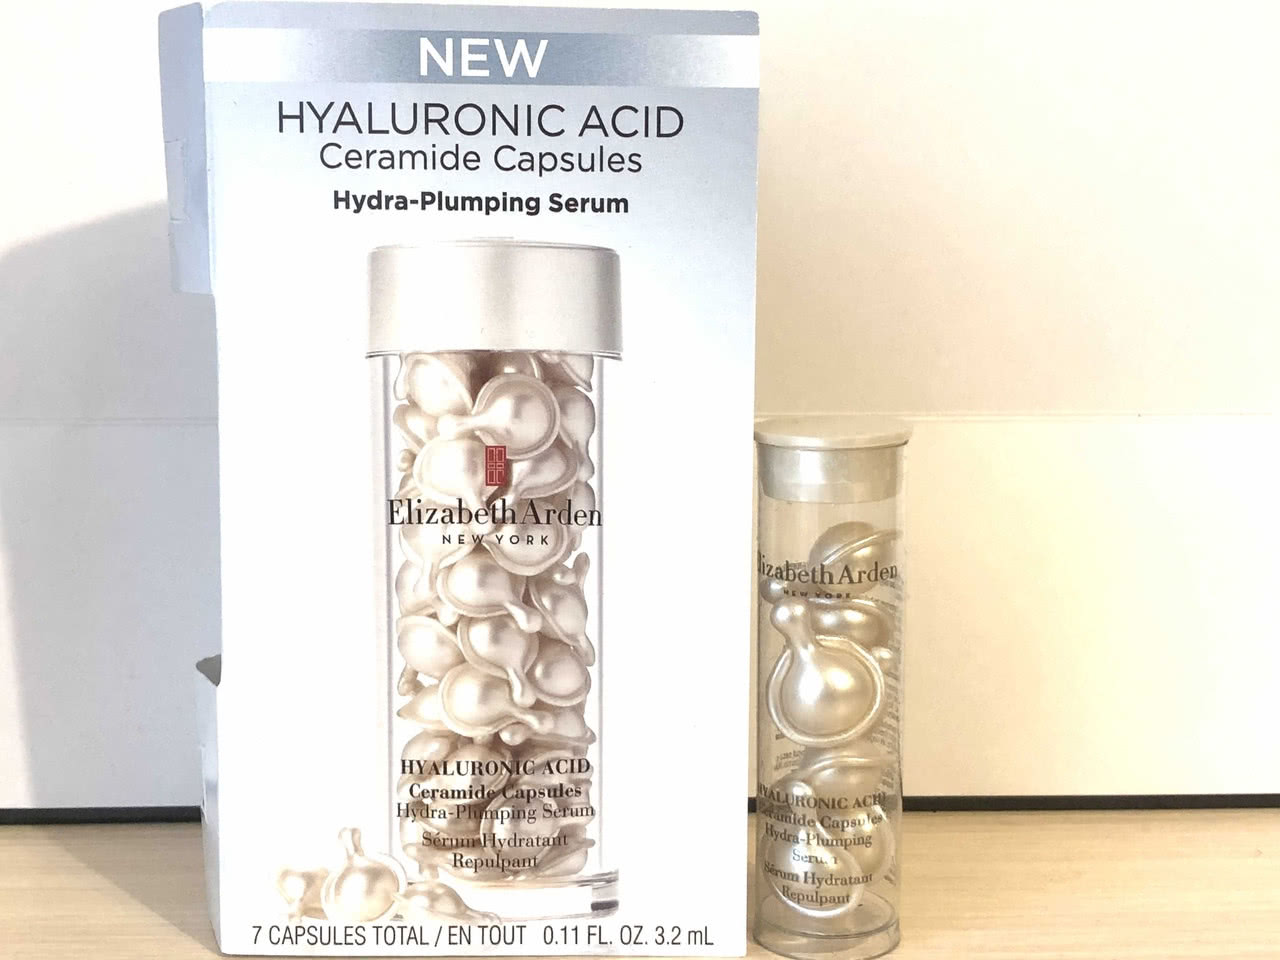 Elizabeth Arden Exclusive Hyaluronic Acid Ceramide Capsules Hydra-Plumping Serum